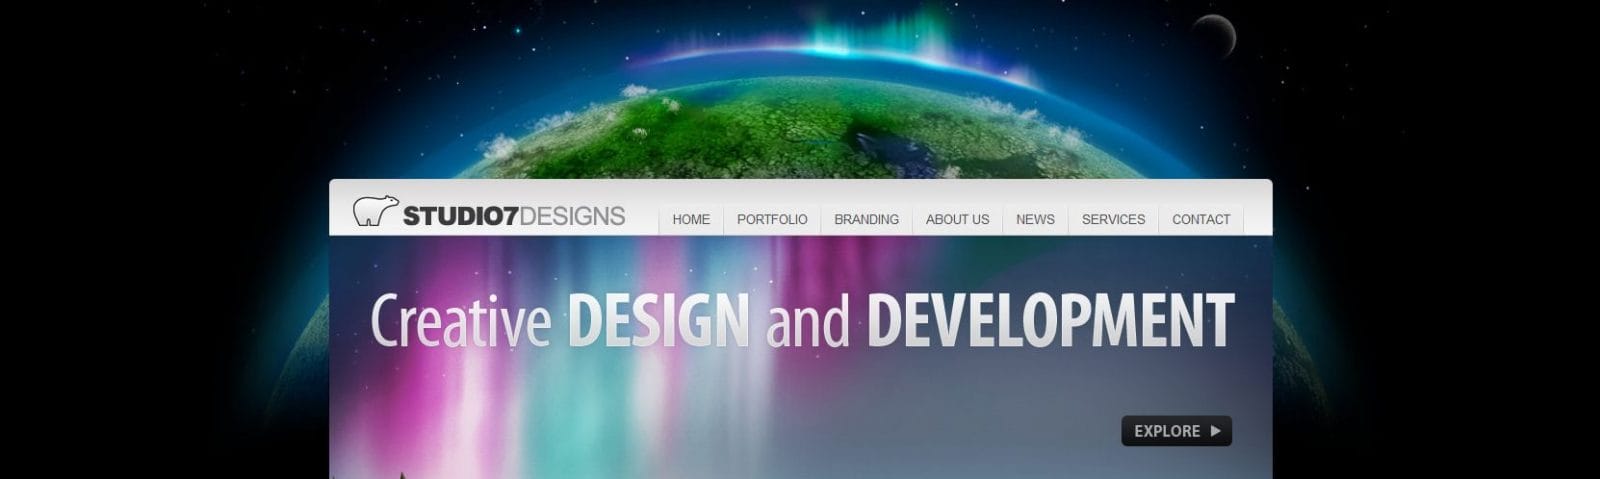 studio_7_designs_website_header_lrg